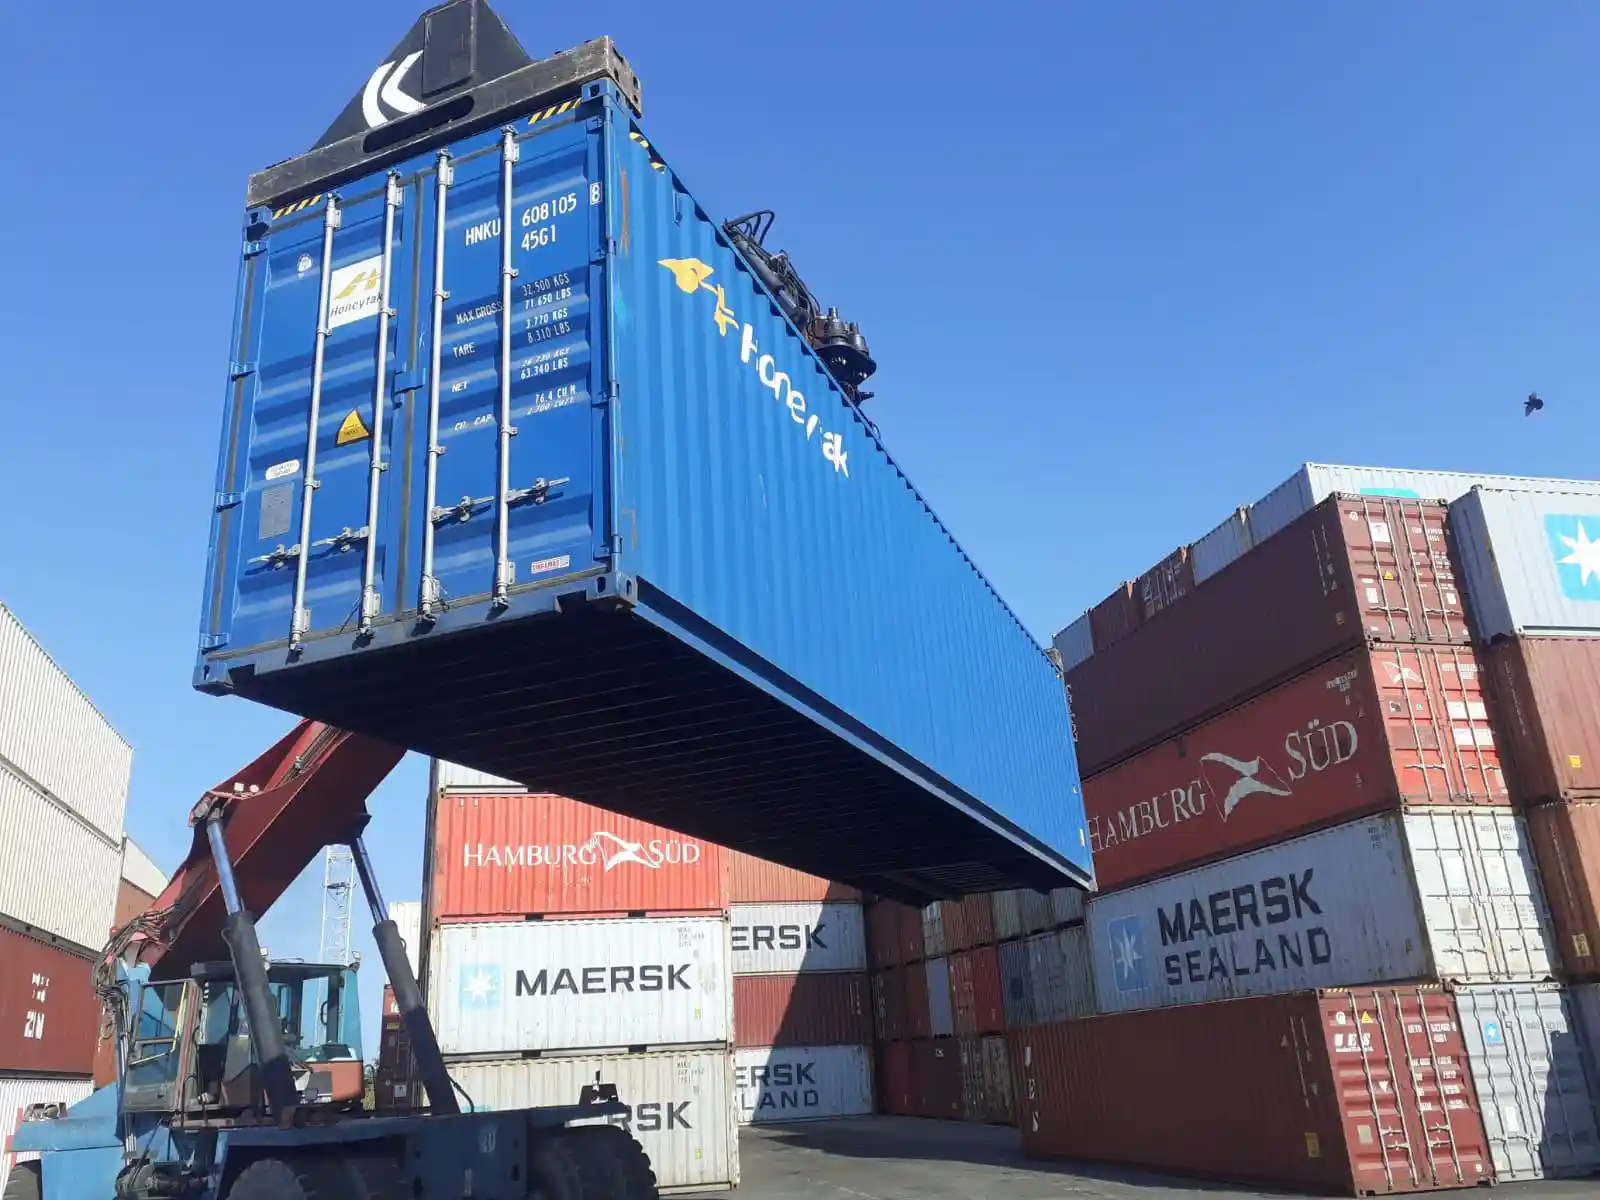 Vanzare container maritim naval pentru depozitare